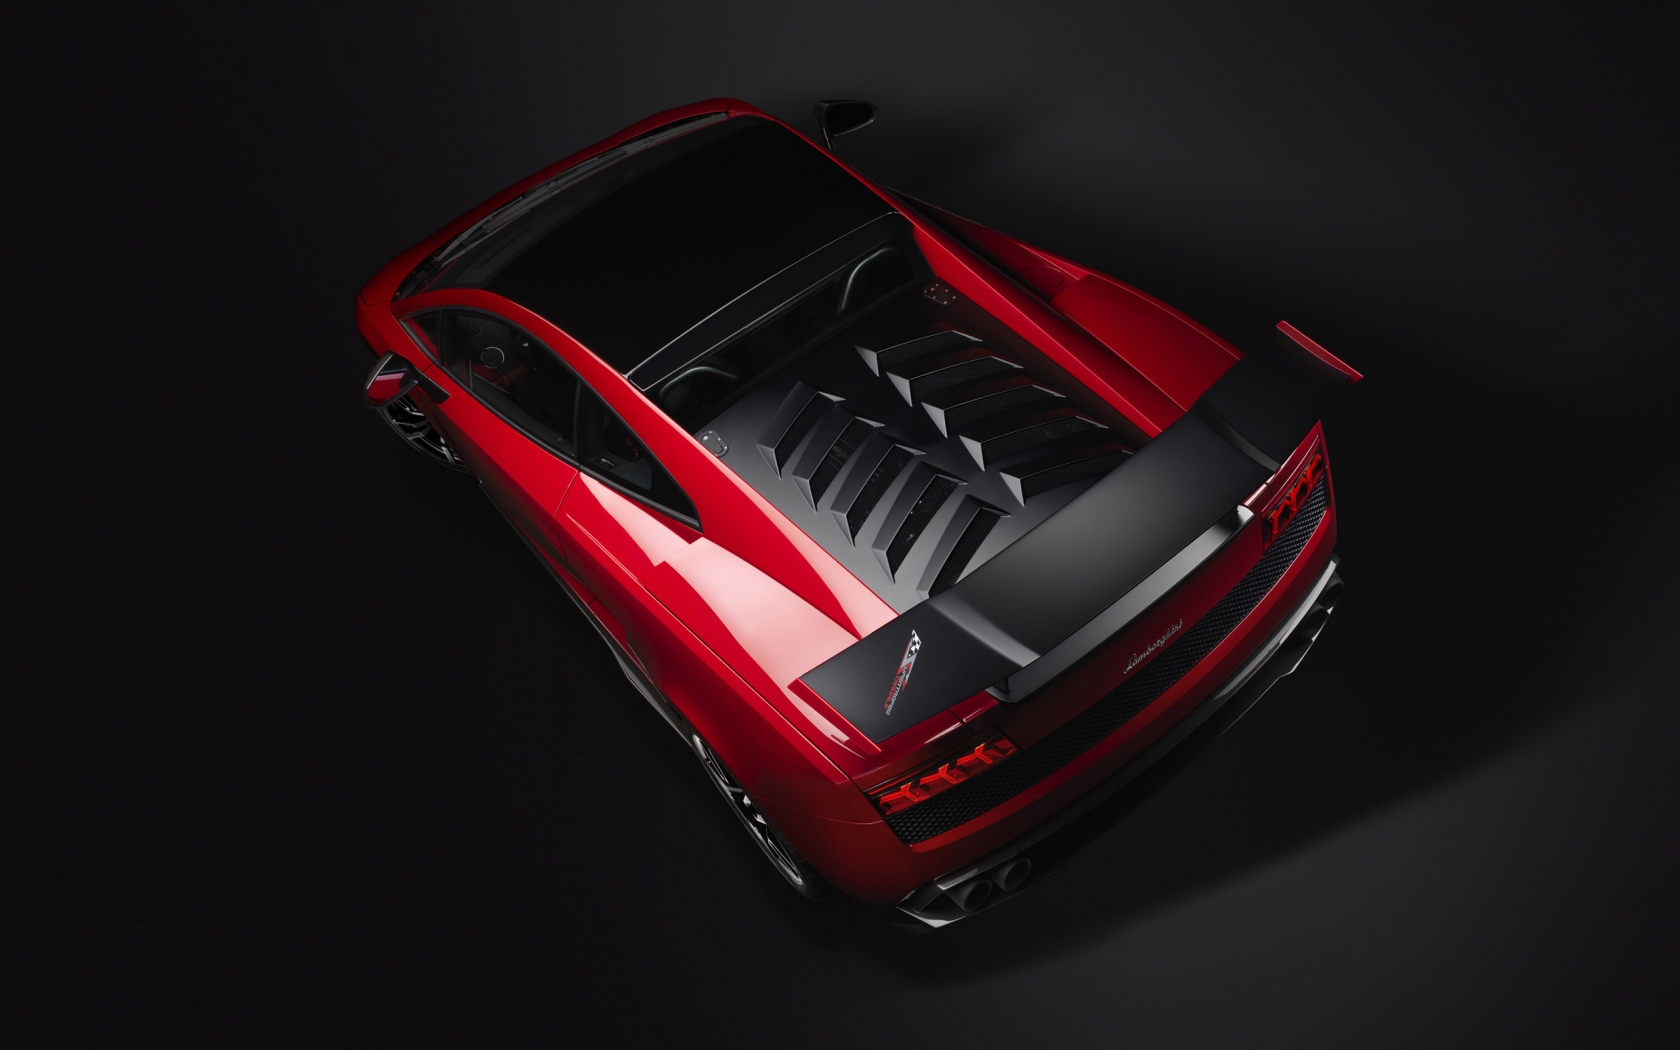 Red Lamborghini Gallardo Stradale for 1680 x 1050 widescreen resolution